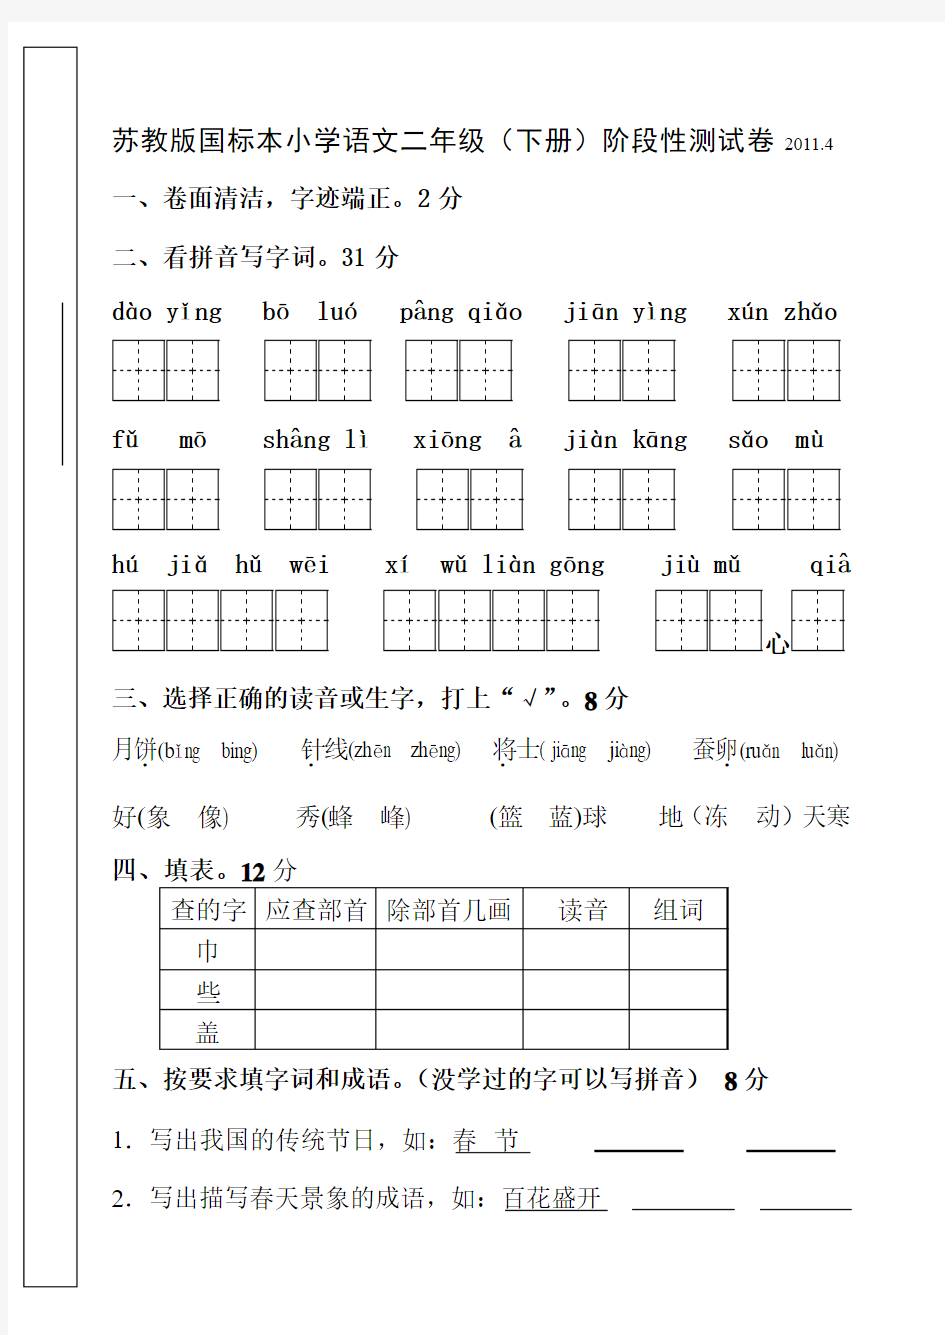 苏教版国标本小学语文二年级(下册)阶段性测试卷